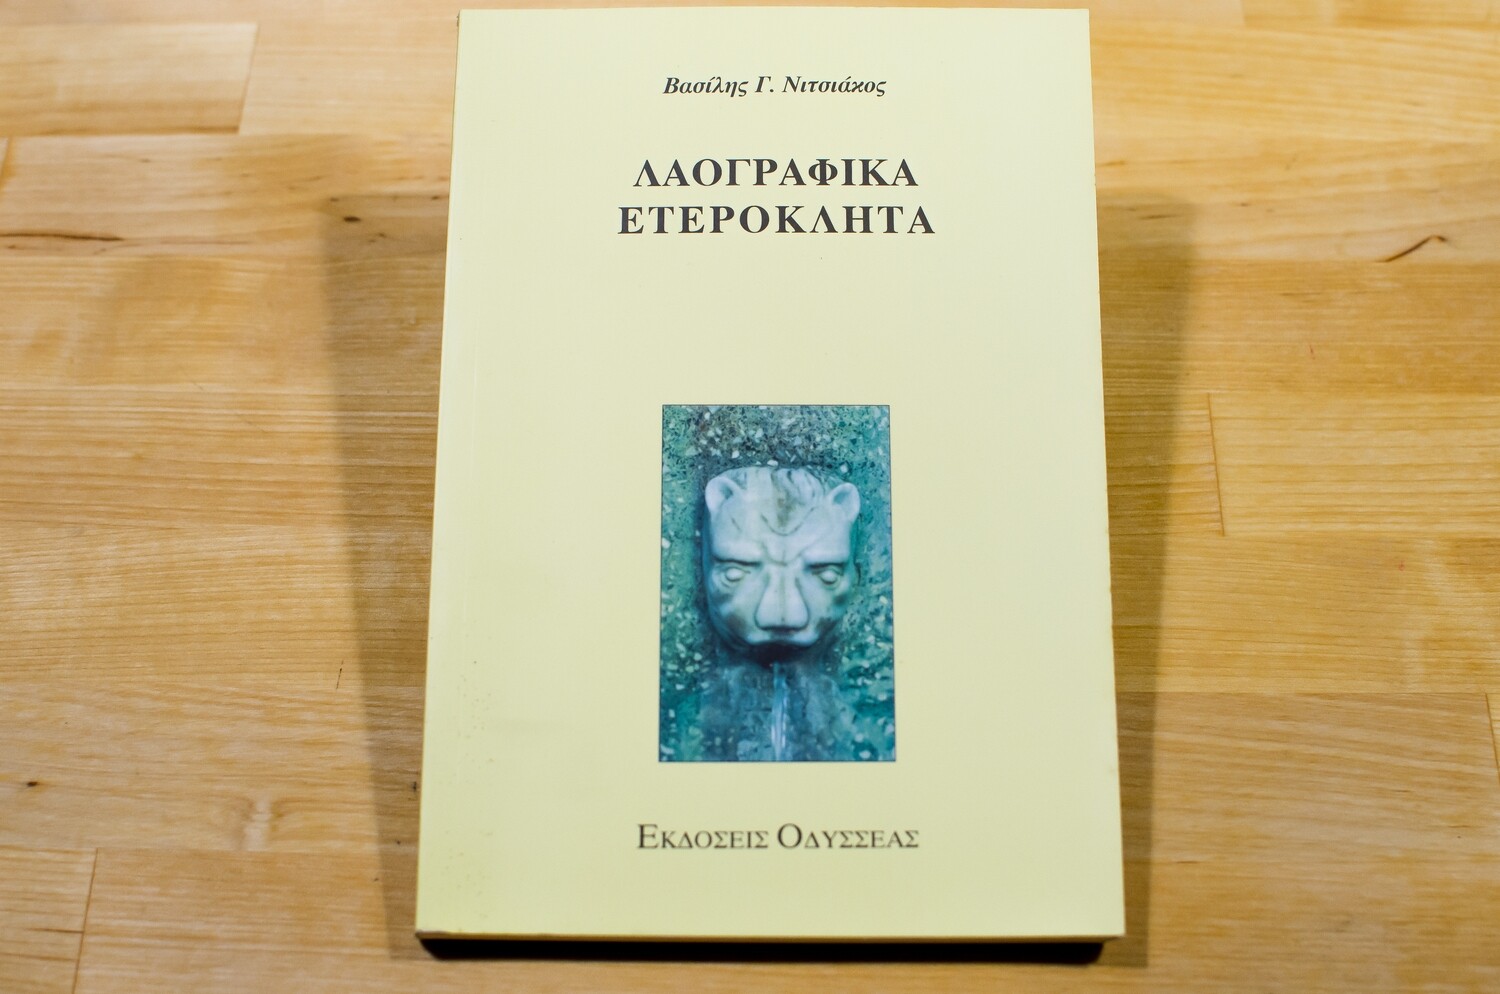 Λαογραφικά ετερόκλητα, Βασίλης Νιτσιάκος, Εκδόσεις Οδυσσέας, 1997